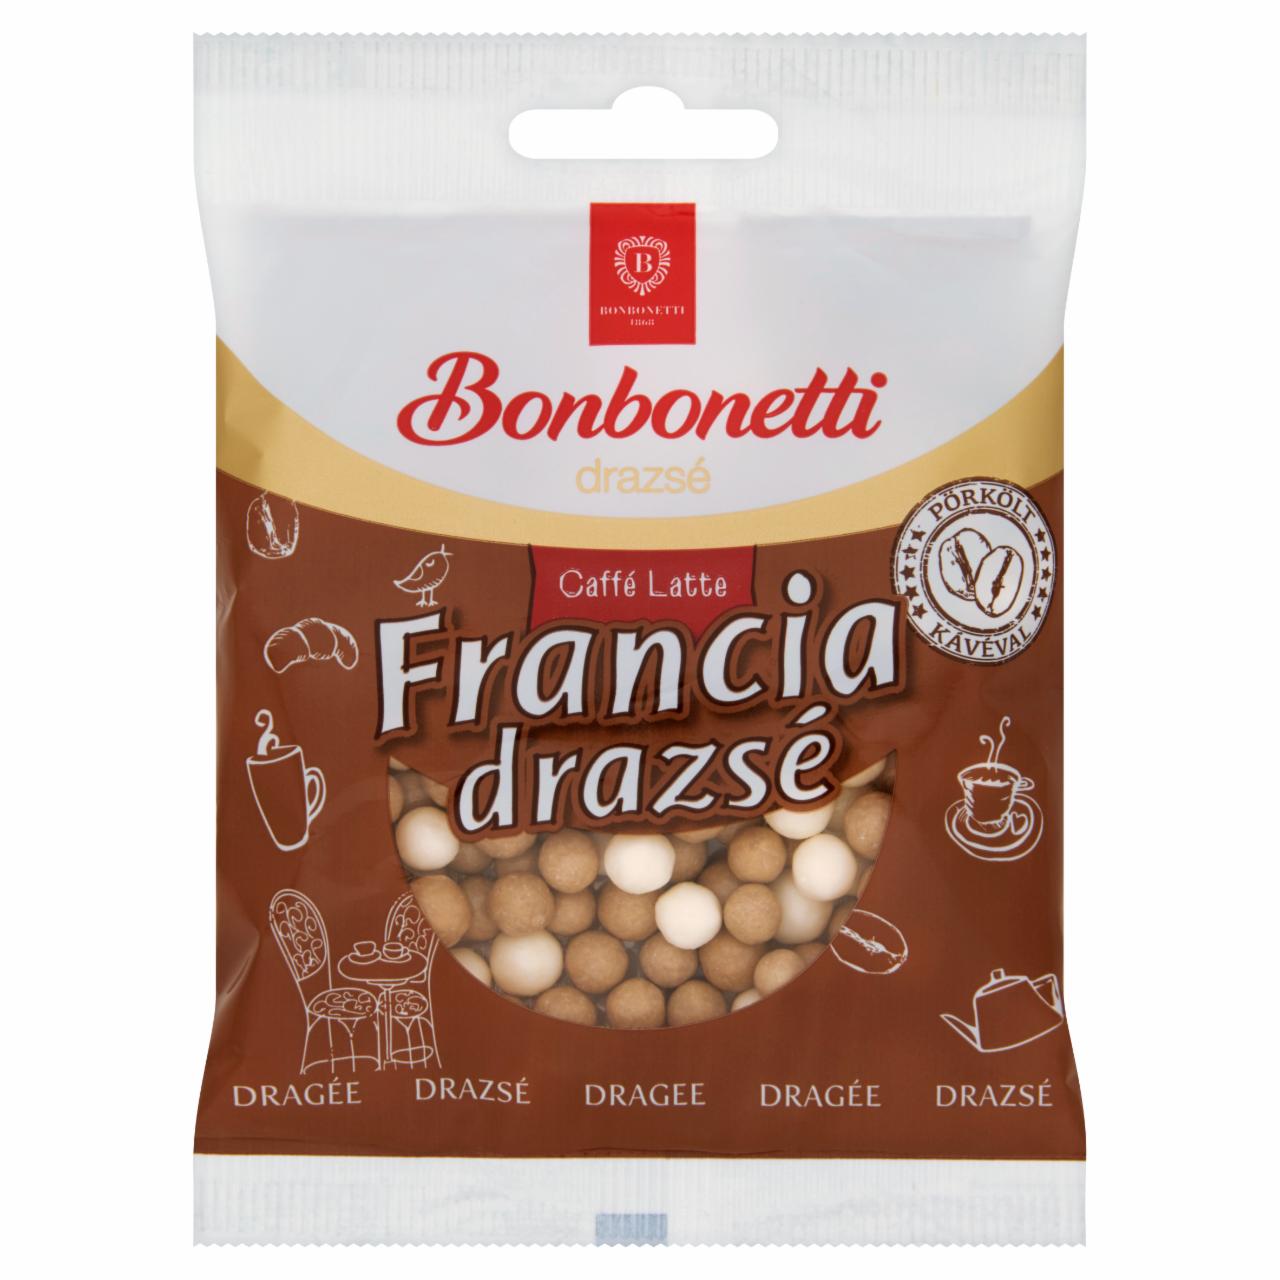 Képek - Bonbonetti Caffé Latte francia drazsé tejes-kávés ízesítéssel 70 g